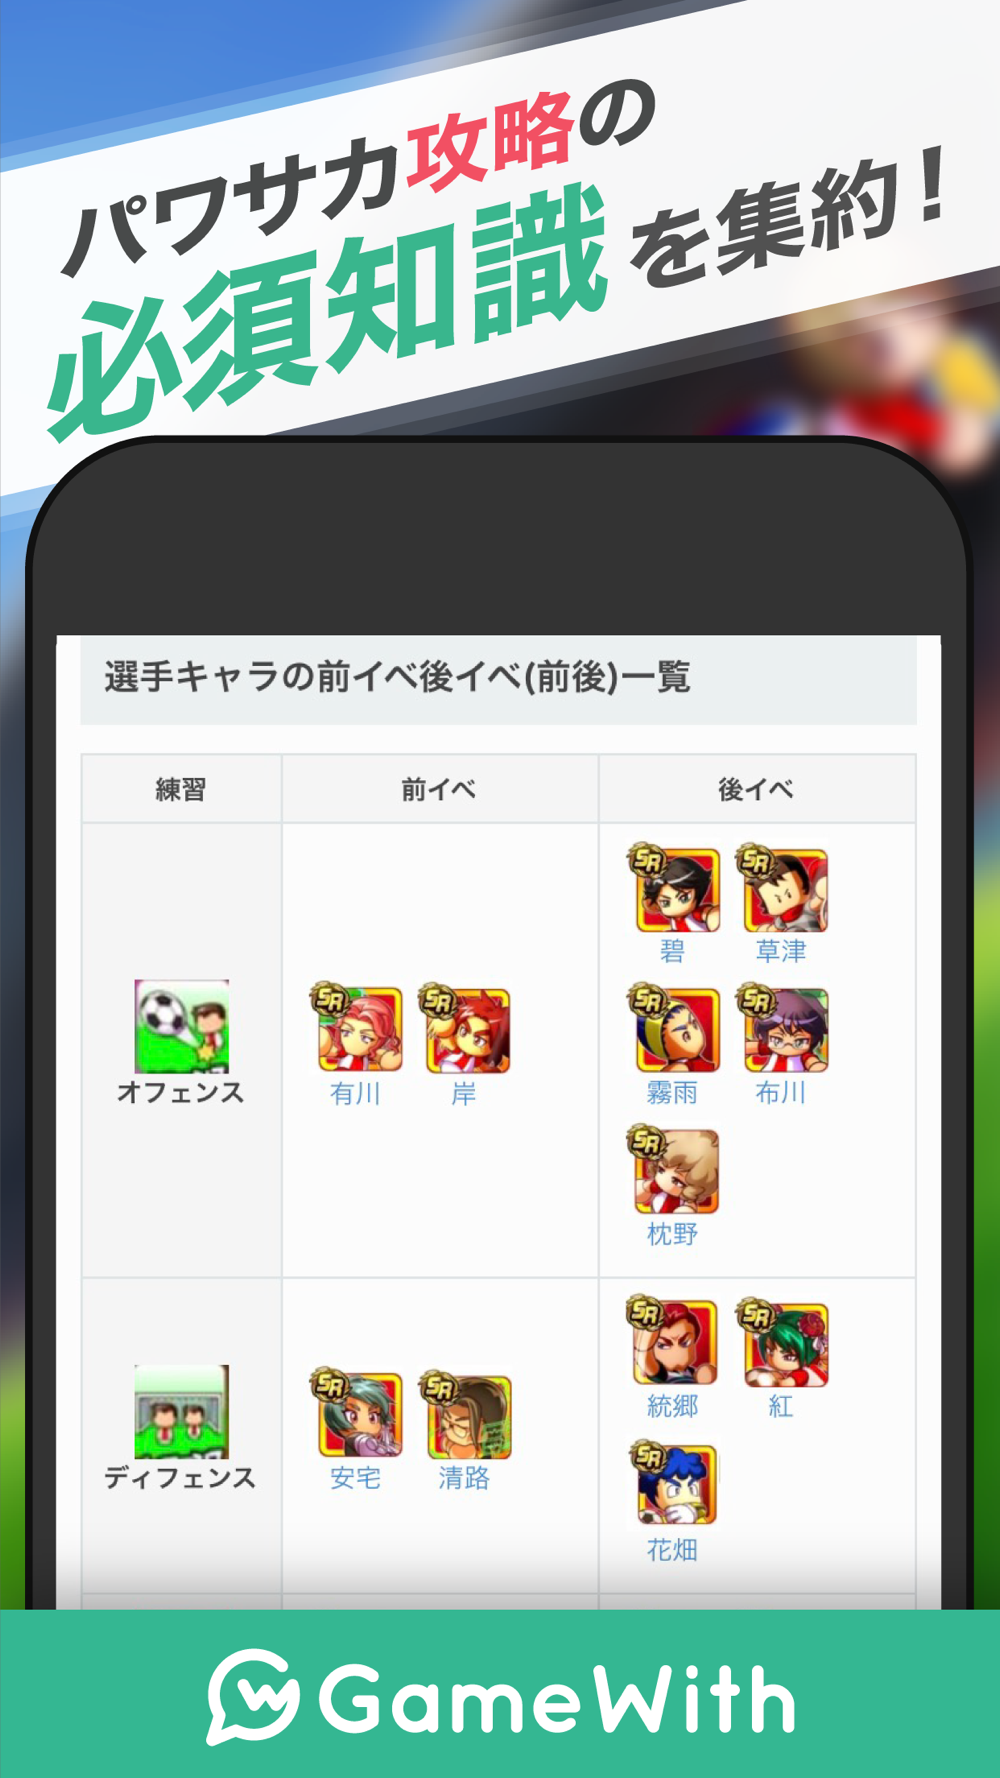 パワサカサクセス攻略 For 実況パワフルサッカー Free Download App For Iphone Steprimo Com